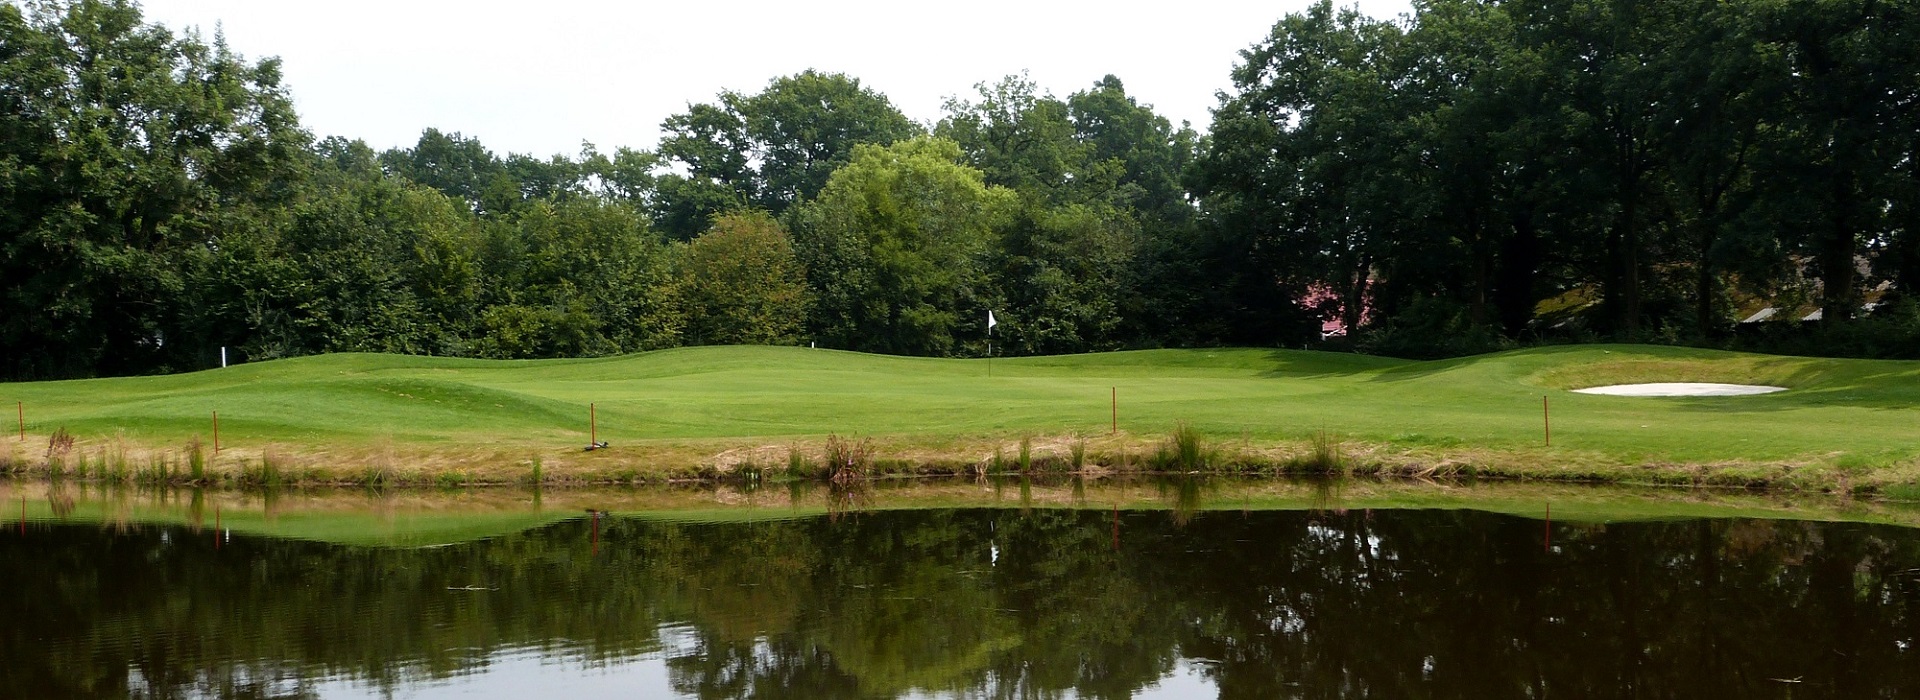 Golfbaan Spielehof - Shortgolf Spielehof - Gelegen in Boekelo nabij Enschede, Hengelo, Haaksbergen en Delden in regio Twente.